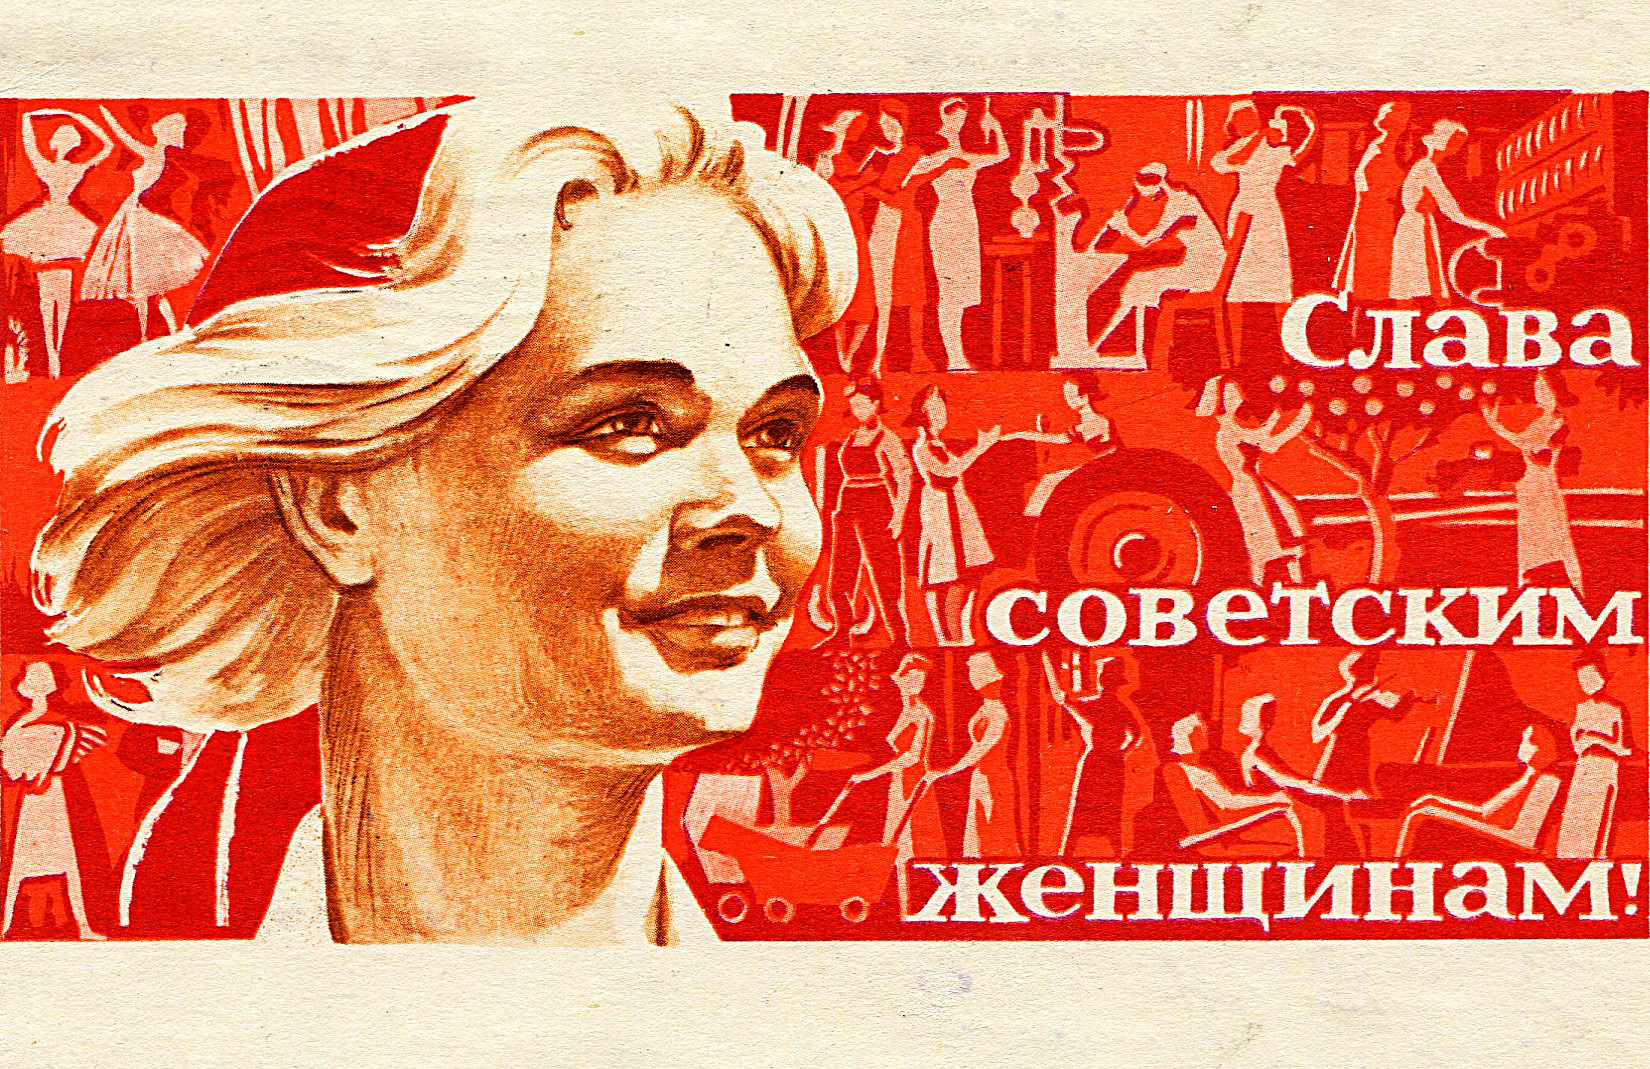 "Ruhm und Ehre den sowjetischen Frauen!"